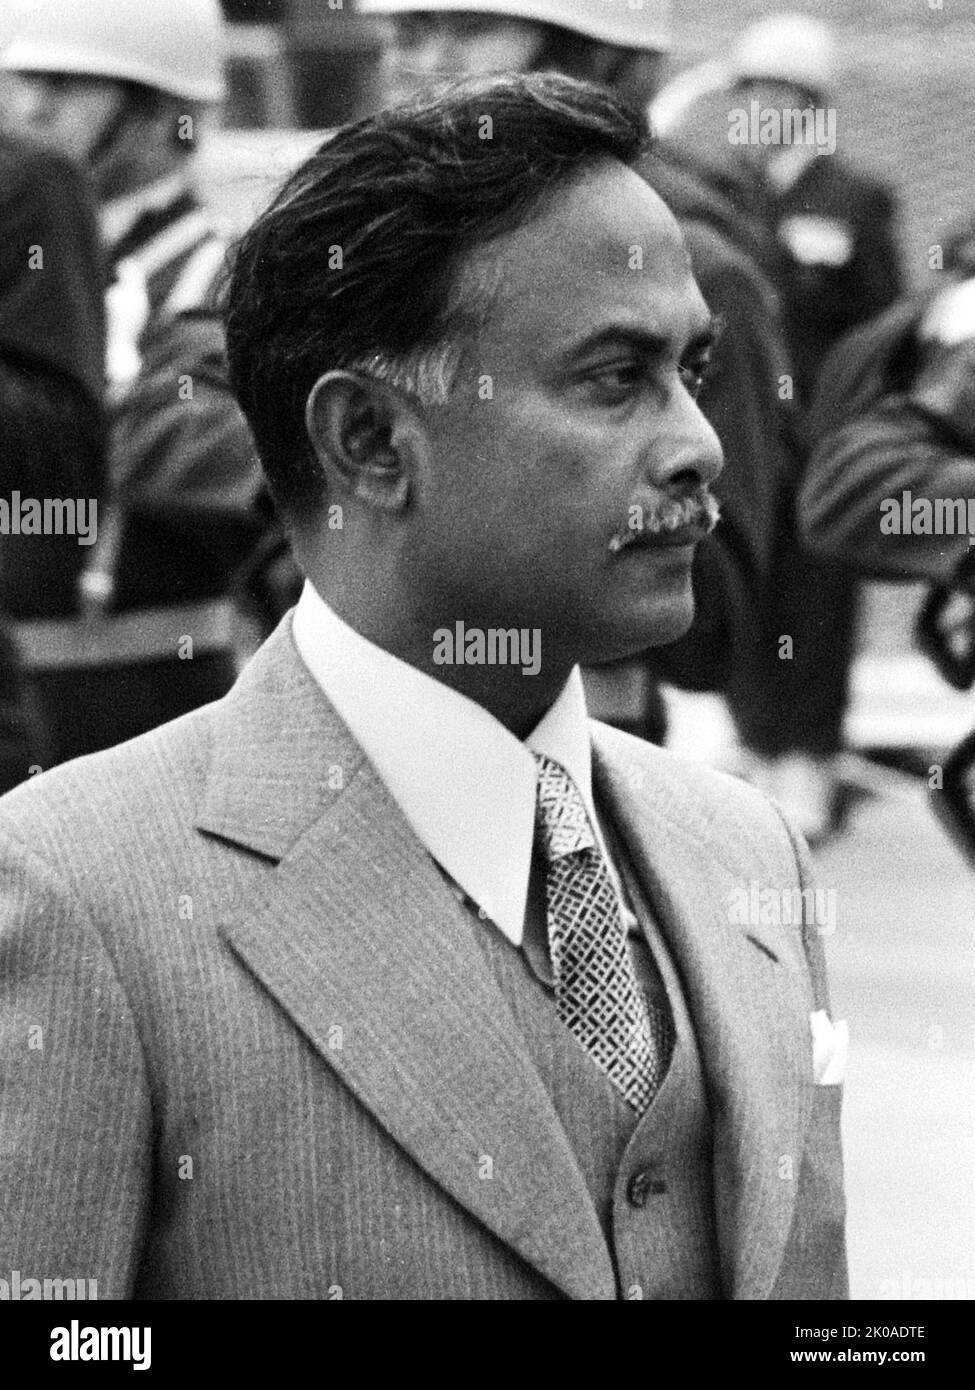 Ziaur Rahman (1936 - 30 mai 1981) Officier de l'armée du Bangladesh et plus tard devenu politicien qui a servi comme Président du Bangladesh de 1977 à 1981. Il a été assassiné le 30 mai 1981 à Chittagong lors d'un coup d'État militaire Banque D'Images